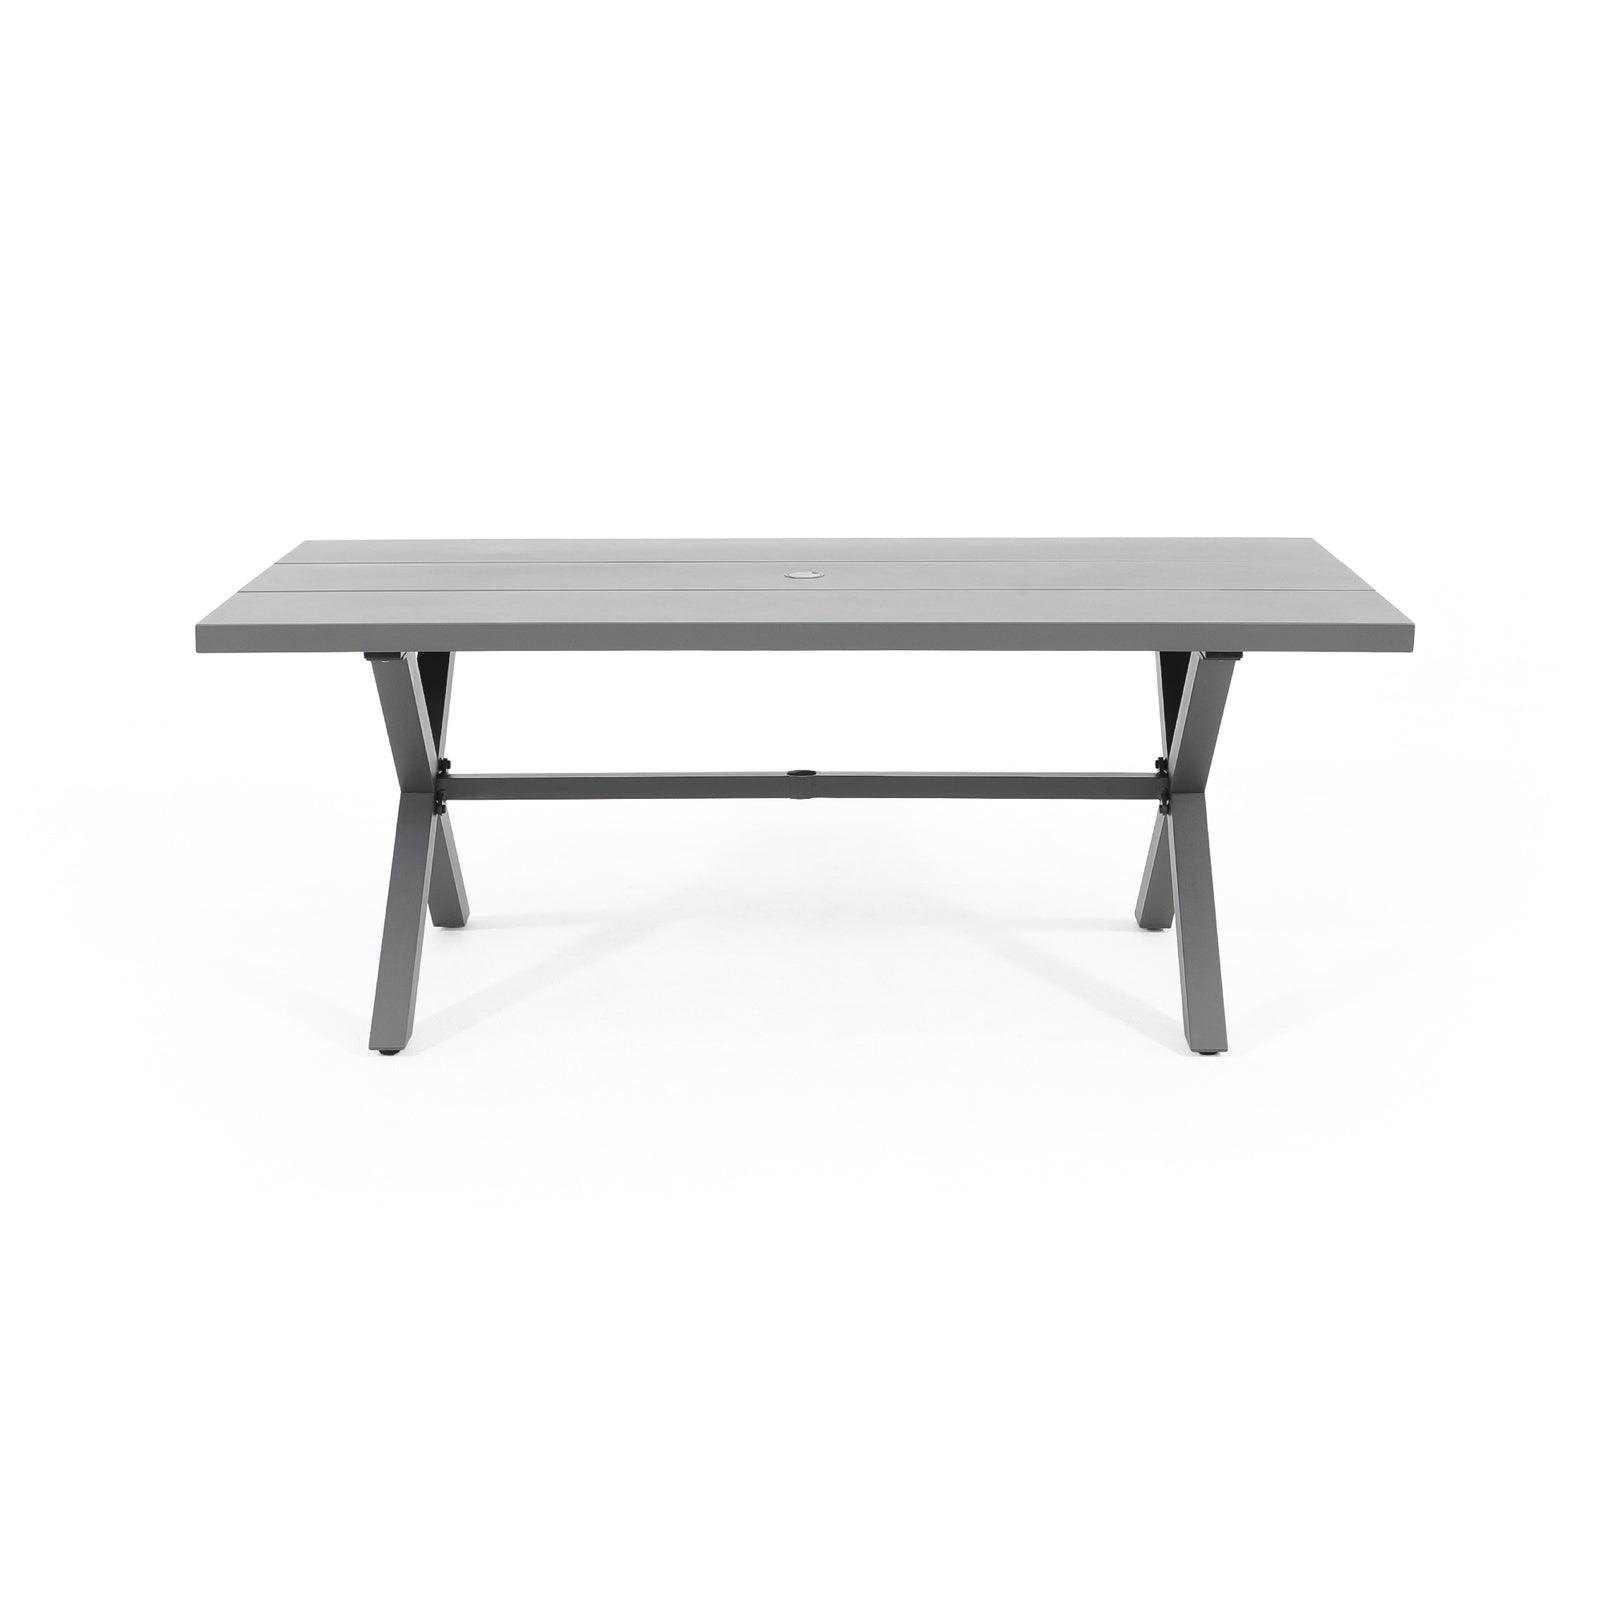 Salina Modern Aluminum Outdoor Dining Table for 8 with Umbrella Hole, Grey Aluminum Frame, Rectangular Shape, X-Shaped Leg Design - Jardina Furniture#color_Dark Grey